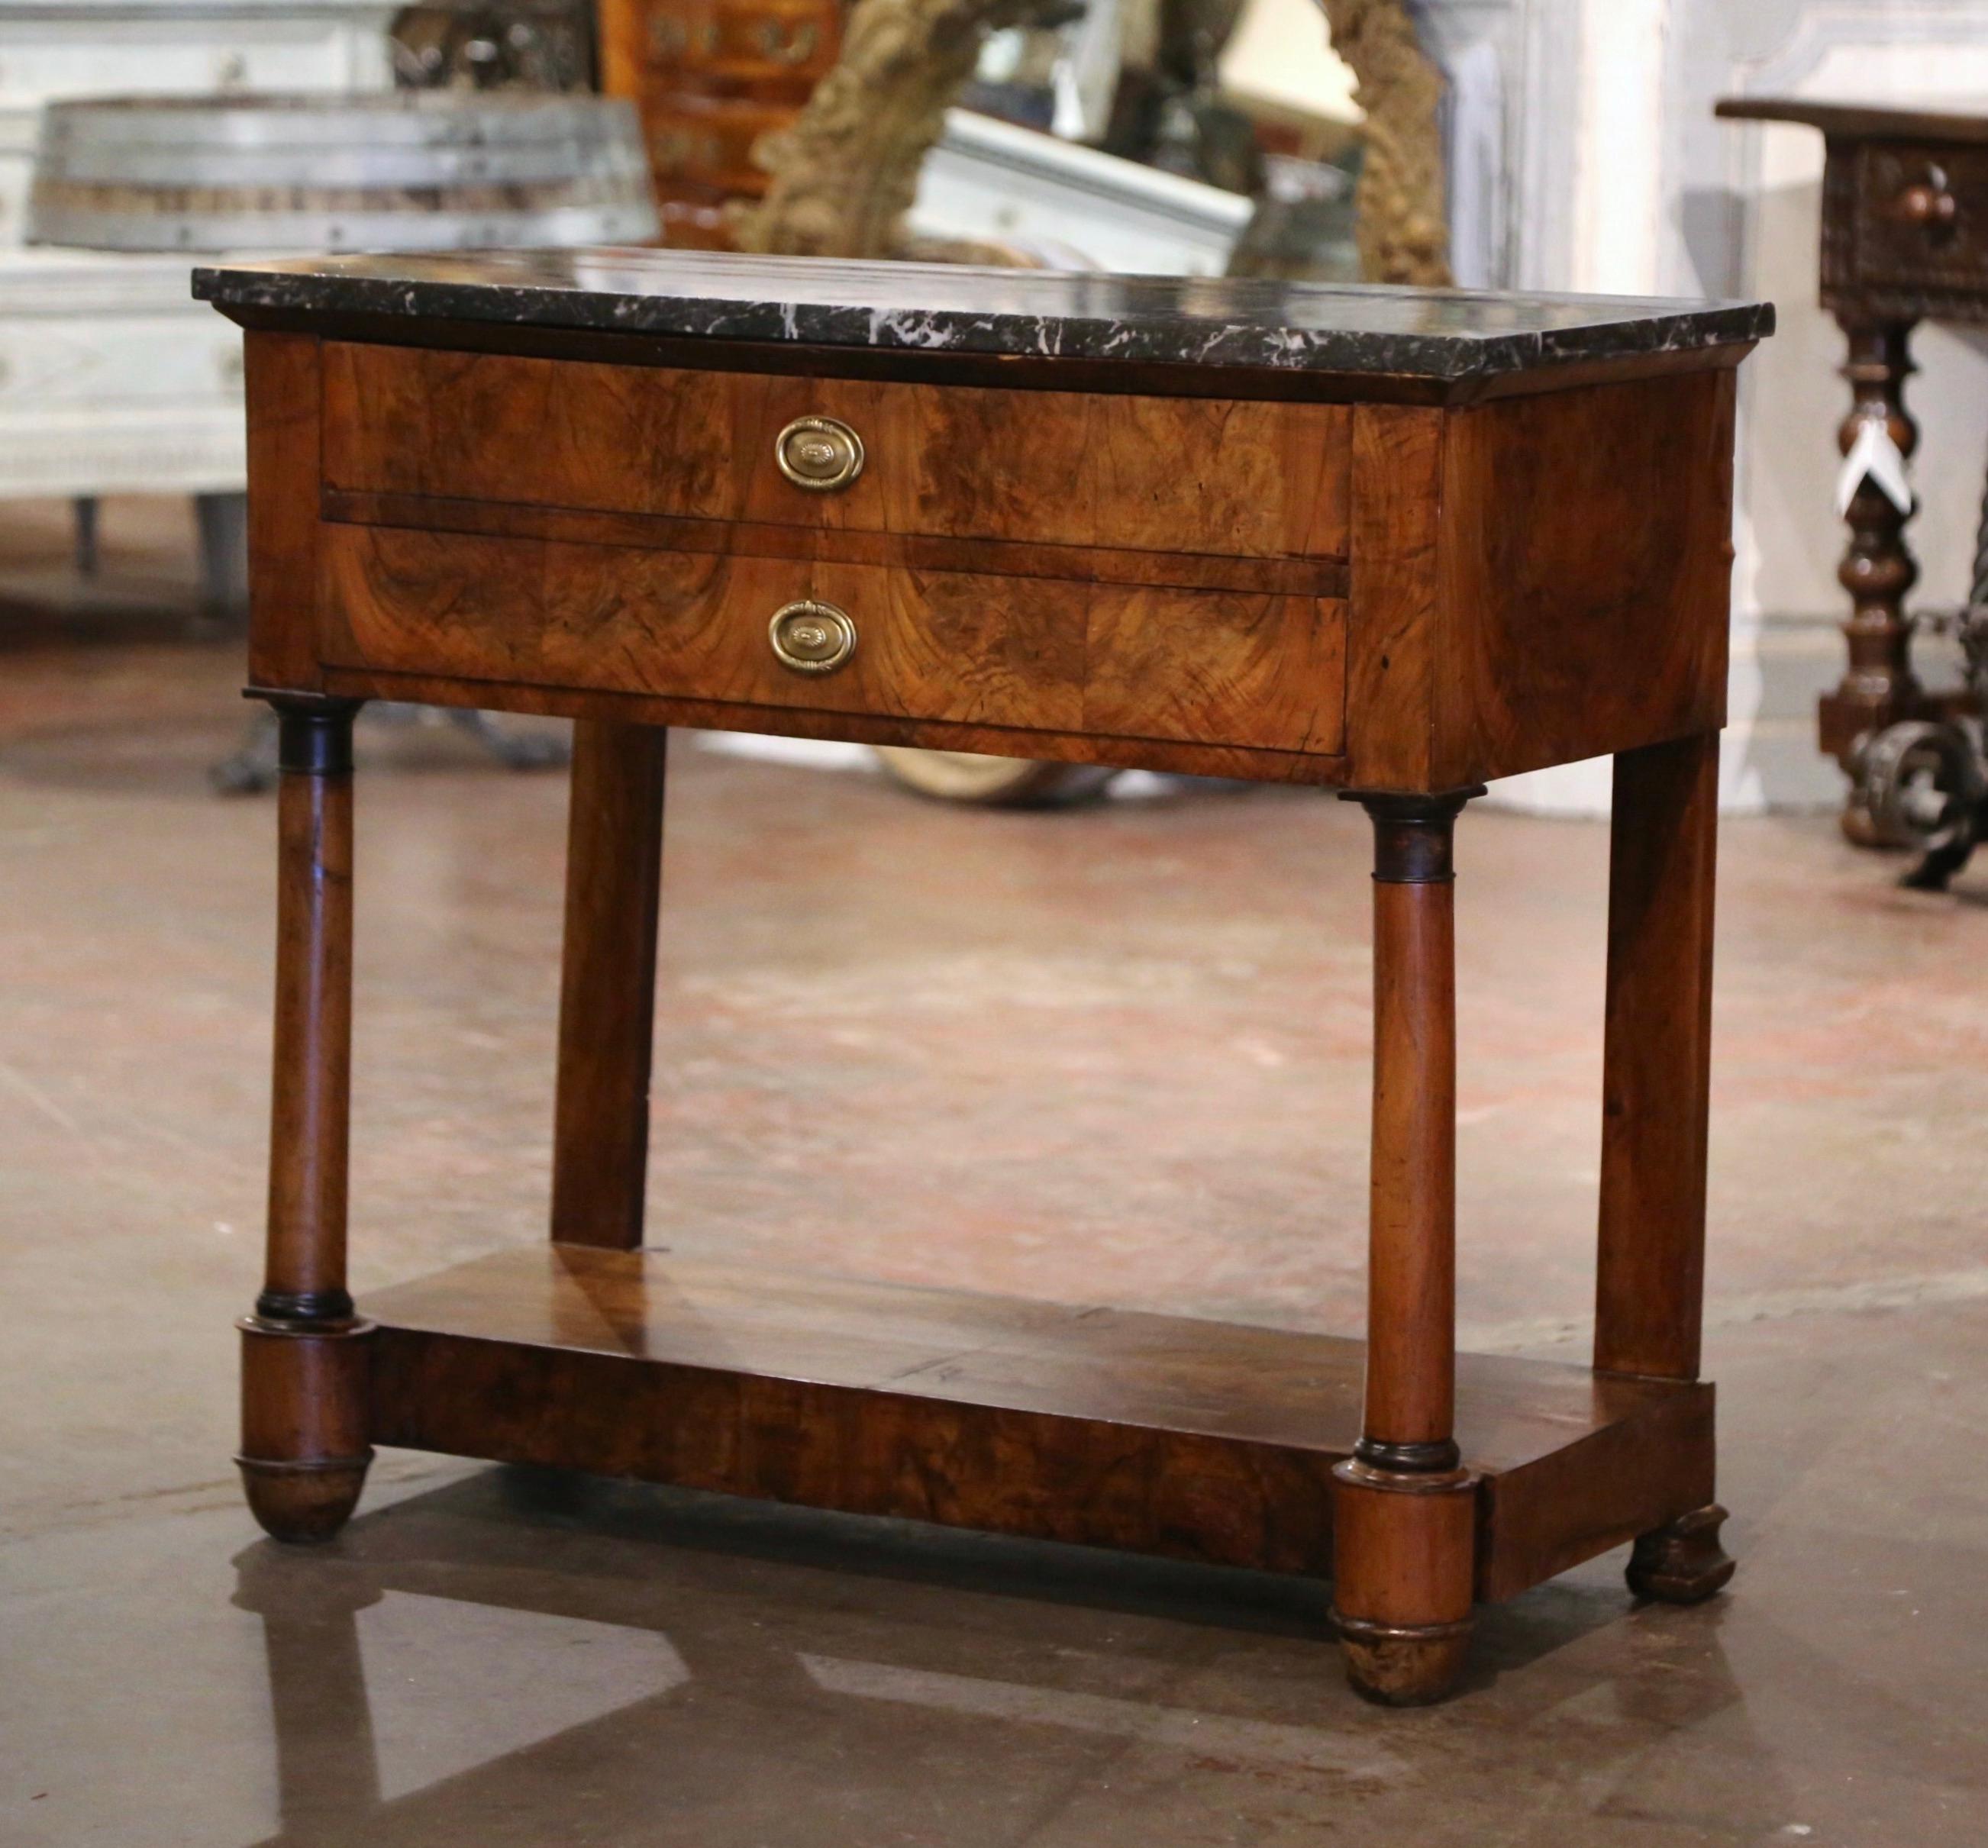 Diese elegante antike Konsole wurde um 1810 in Frankreich hergestellt. Der schmale Tisch aus Mahagoniholz steht auf gedrechselten Säulen, die vorne in runden Füßen enden, und auf Pilasterfüßen hinten, die über einer Bahre liegen. Auf der Vorderseite